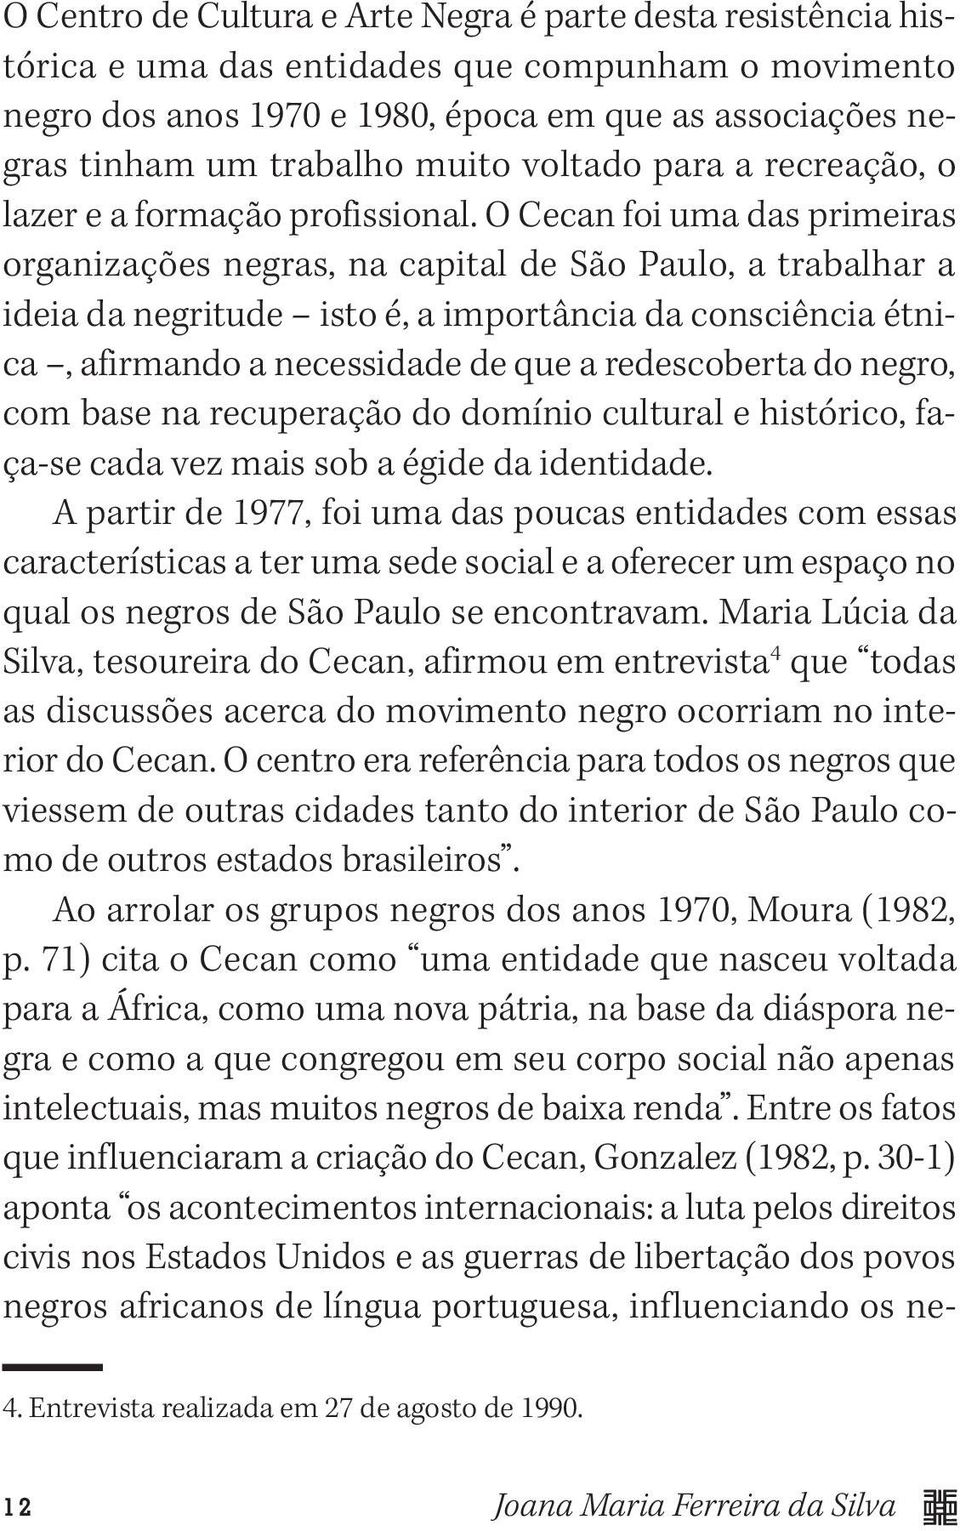 O Cecan foi uma das primeiras organizações negras, na capital de São Paulo, a trabalhar a ideia da negritude isto é, a importância da consciência étnica, afirmando a necessidade de que a redescoberta